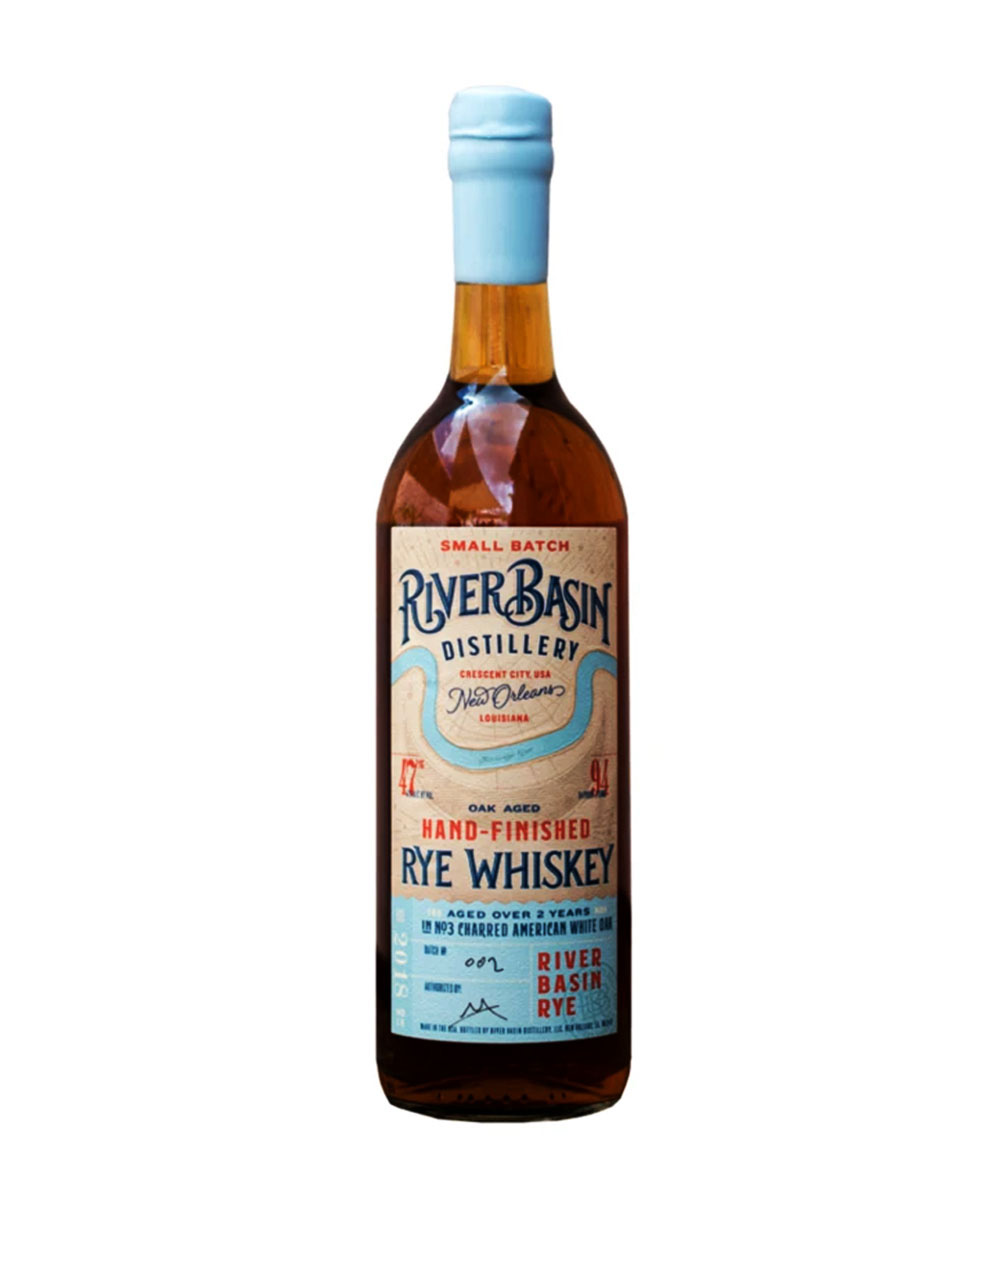 River Basin Batch 002/003 Rye Whiskey